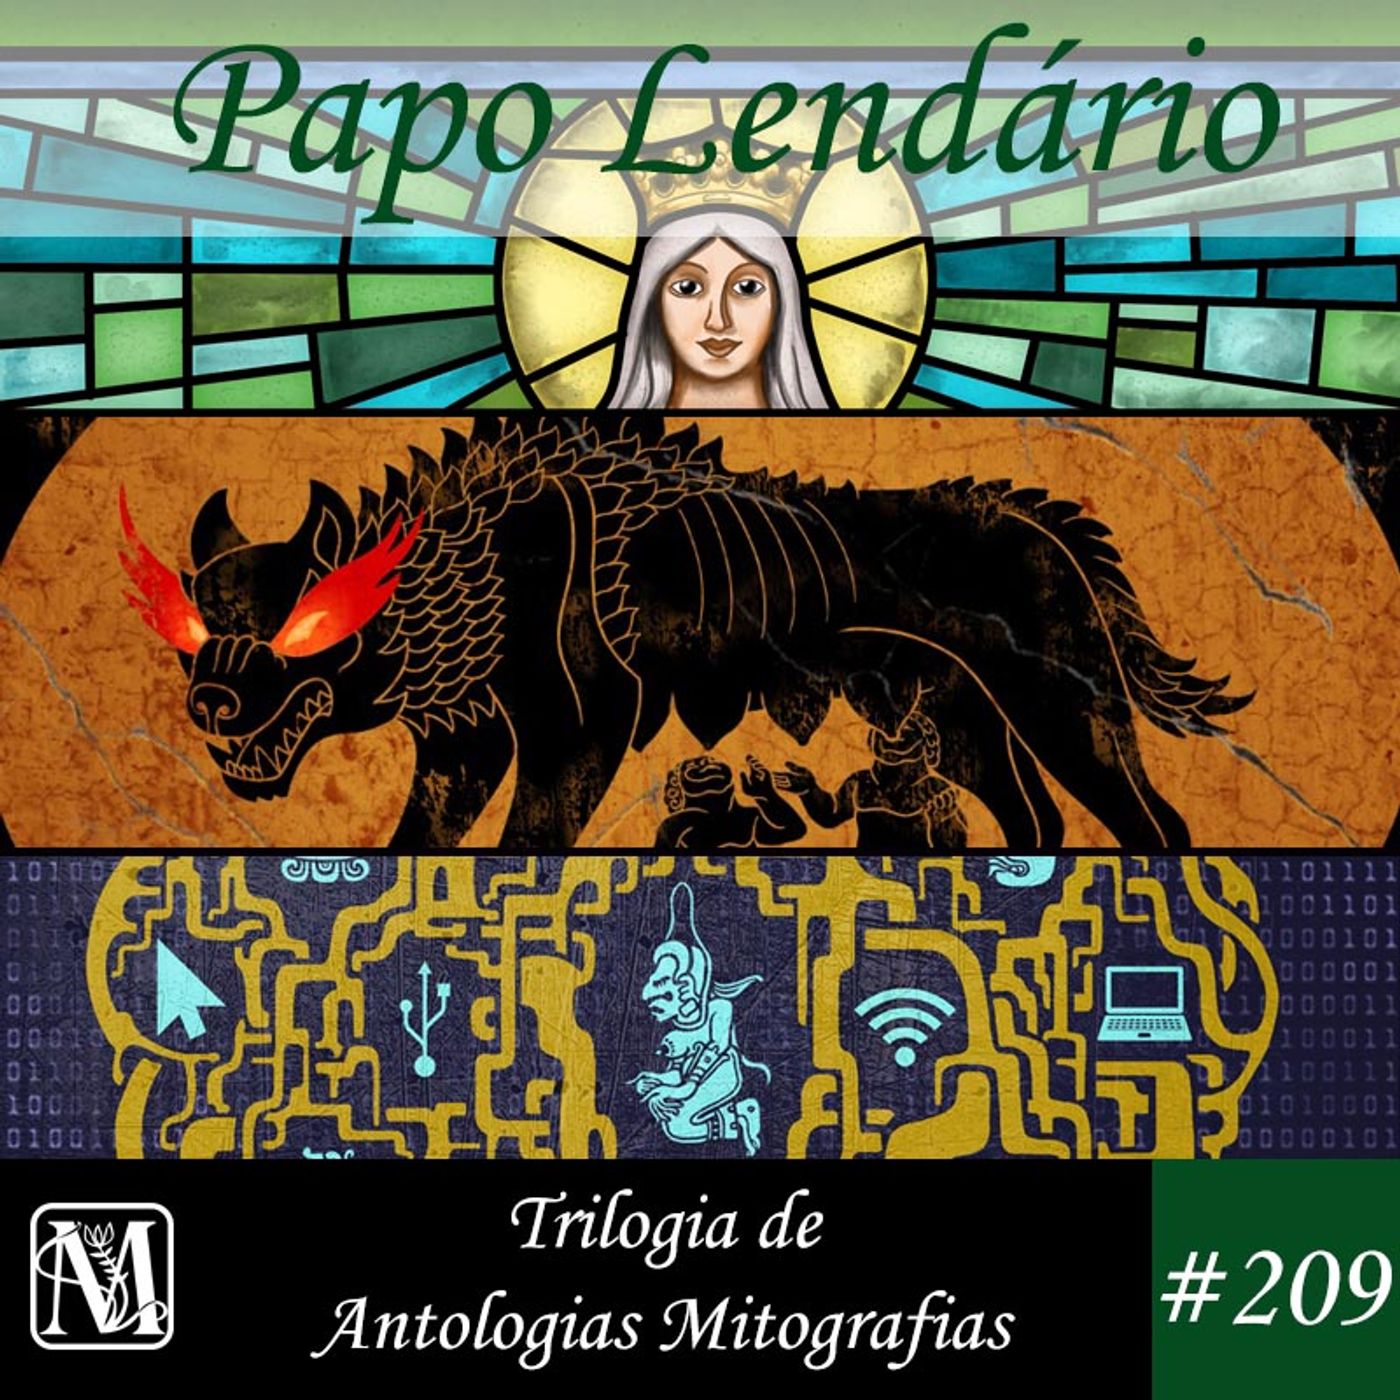 Papo Lendário #209 – Trilogia de Antologias Mitografias